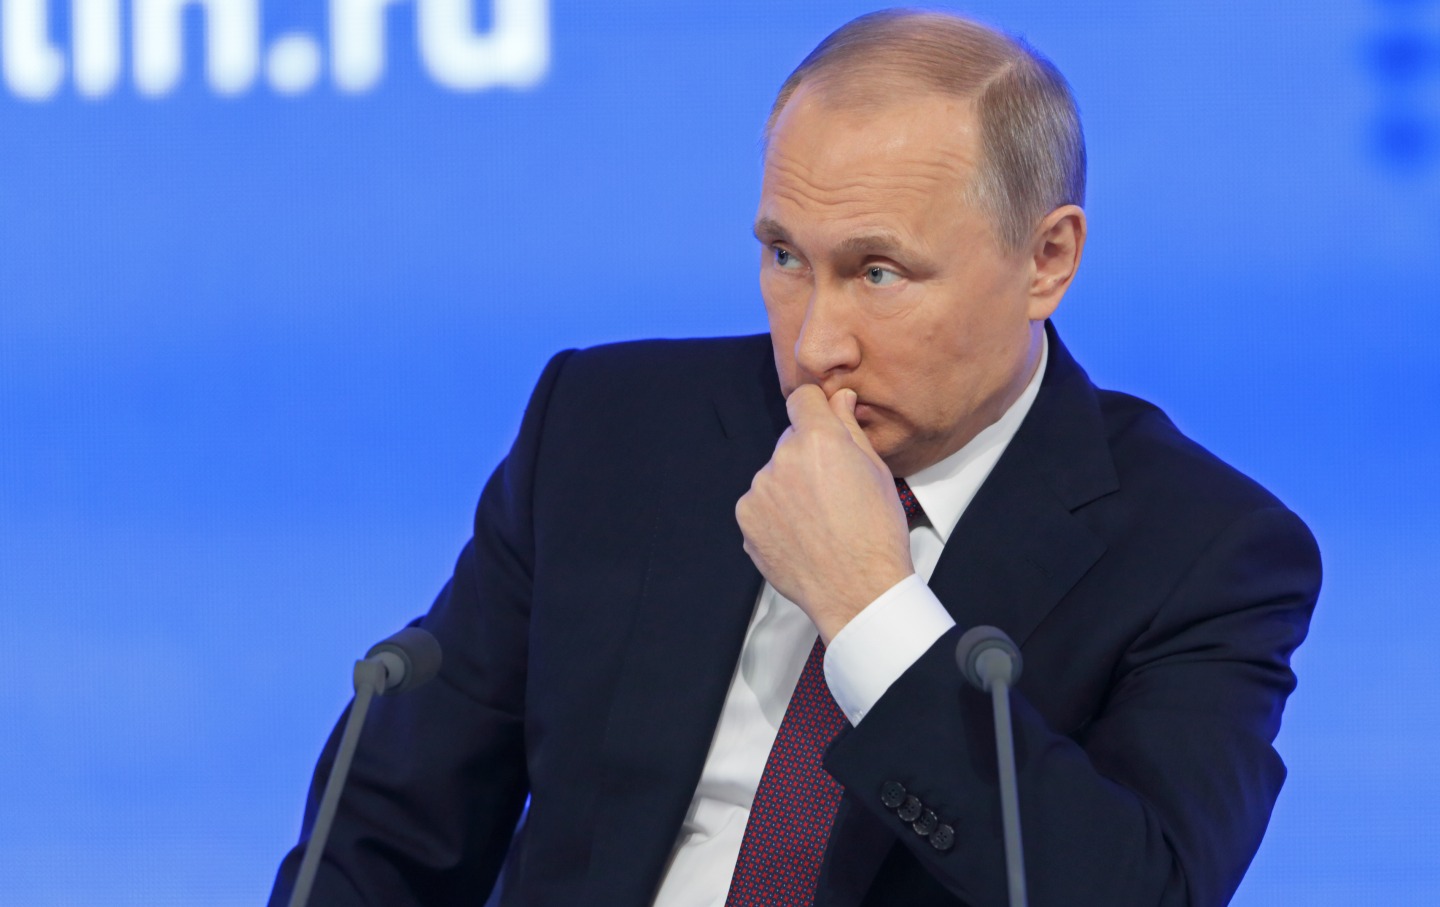 Β.Πούτιν: «Είμαστε ανοιχτοί σε συνεργασία με την Ευρώπη αλλά μία τέτοια αγάπη είναι αδύνατη όταν δηλώνεται μονομερώς»